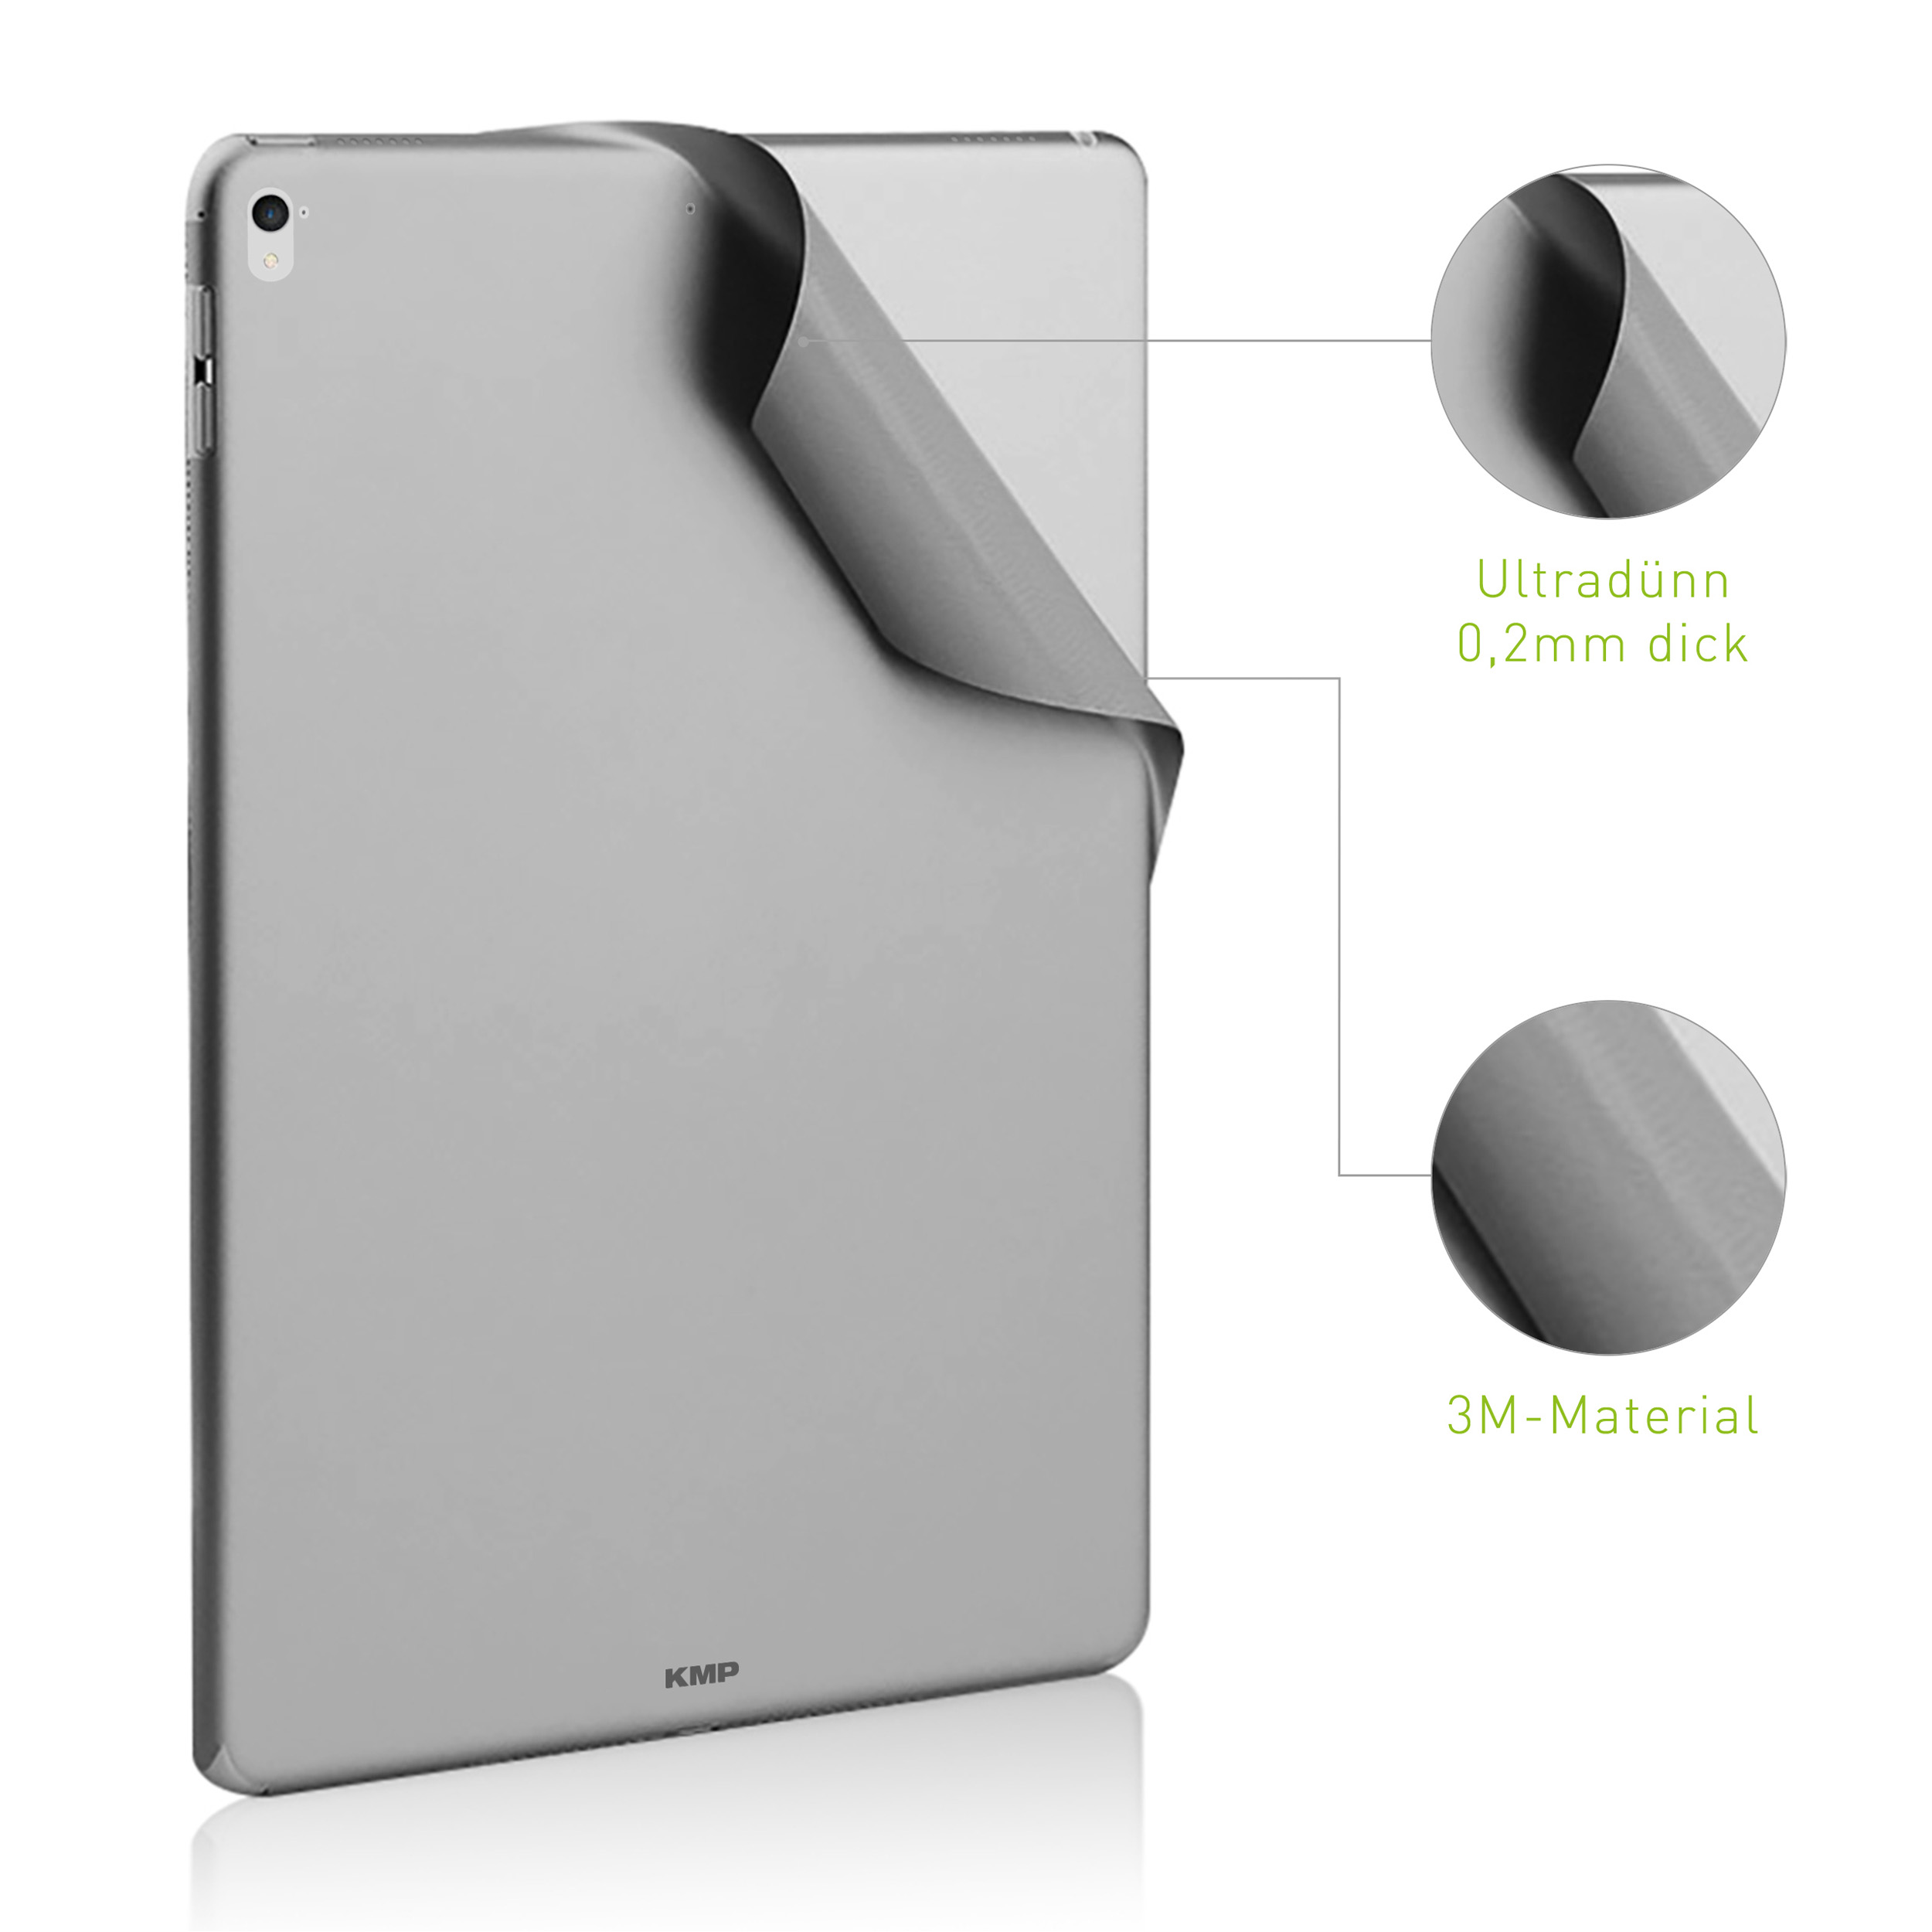 KMP Schutzfolie für iPad AntiScratchLevel, 6H 3M-Material, Protective Gray space skin für Cover \